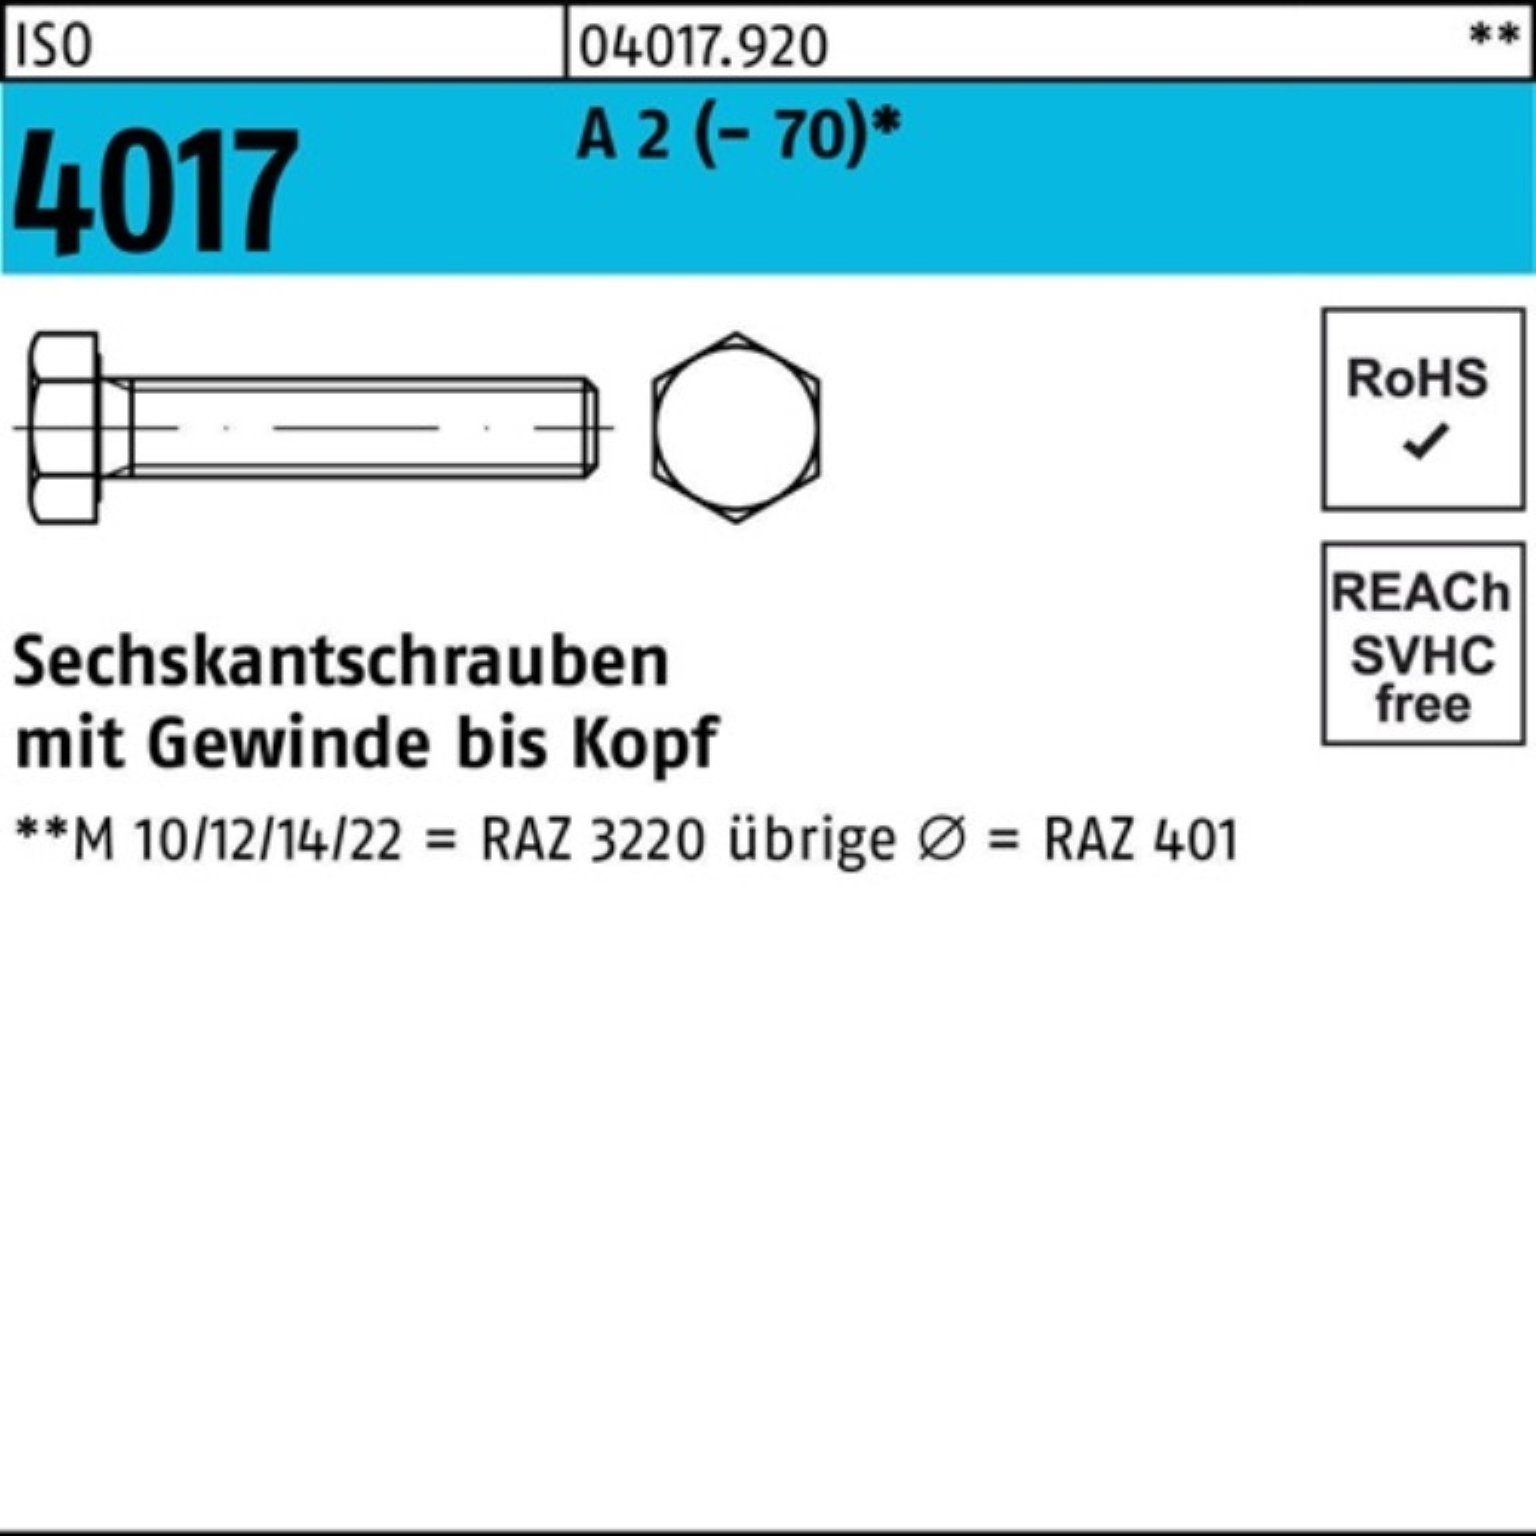 Bufab Sechskantschraube 100er Pack Sechskantschraube ISO 4017 VG M5x 6 A 2 (70) 100 Stück I